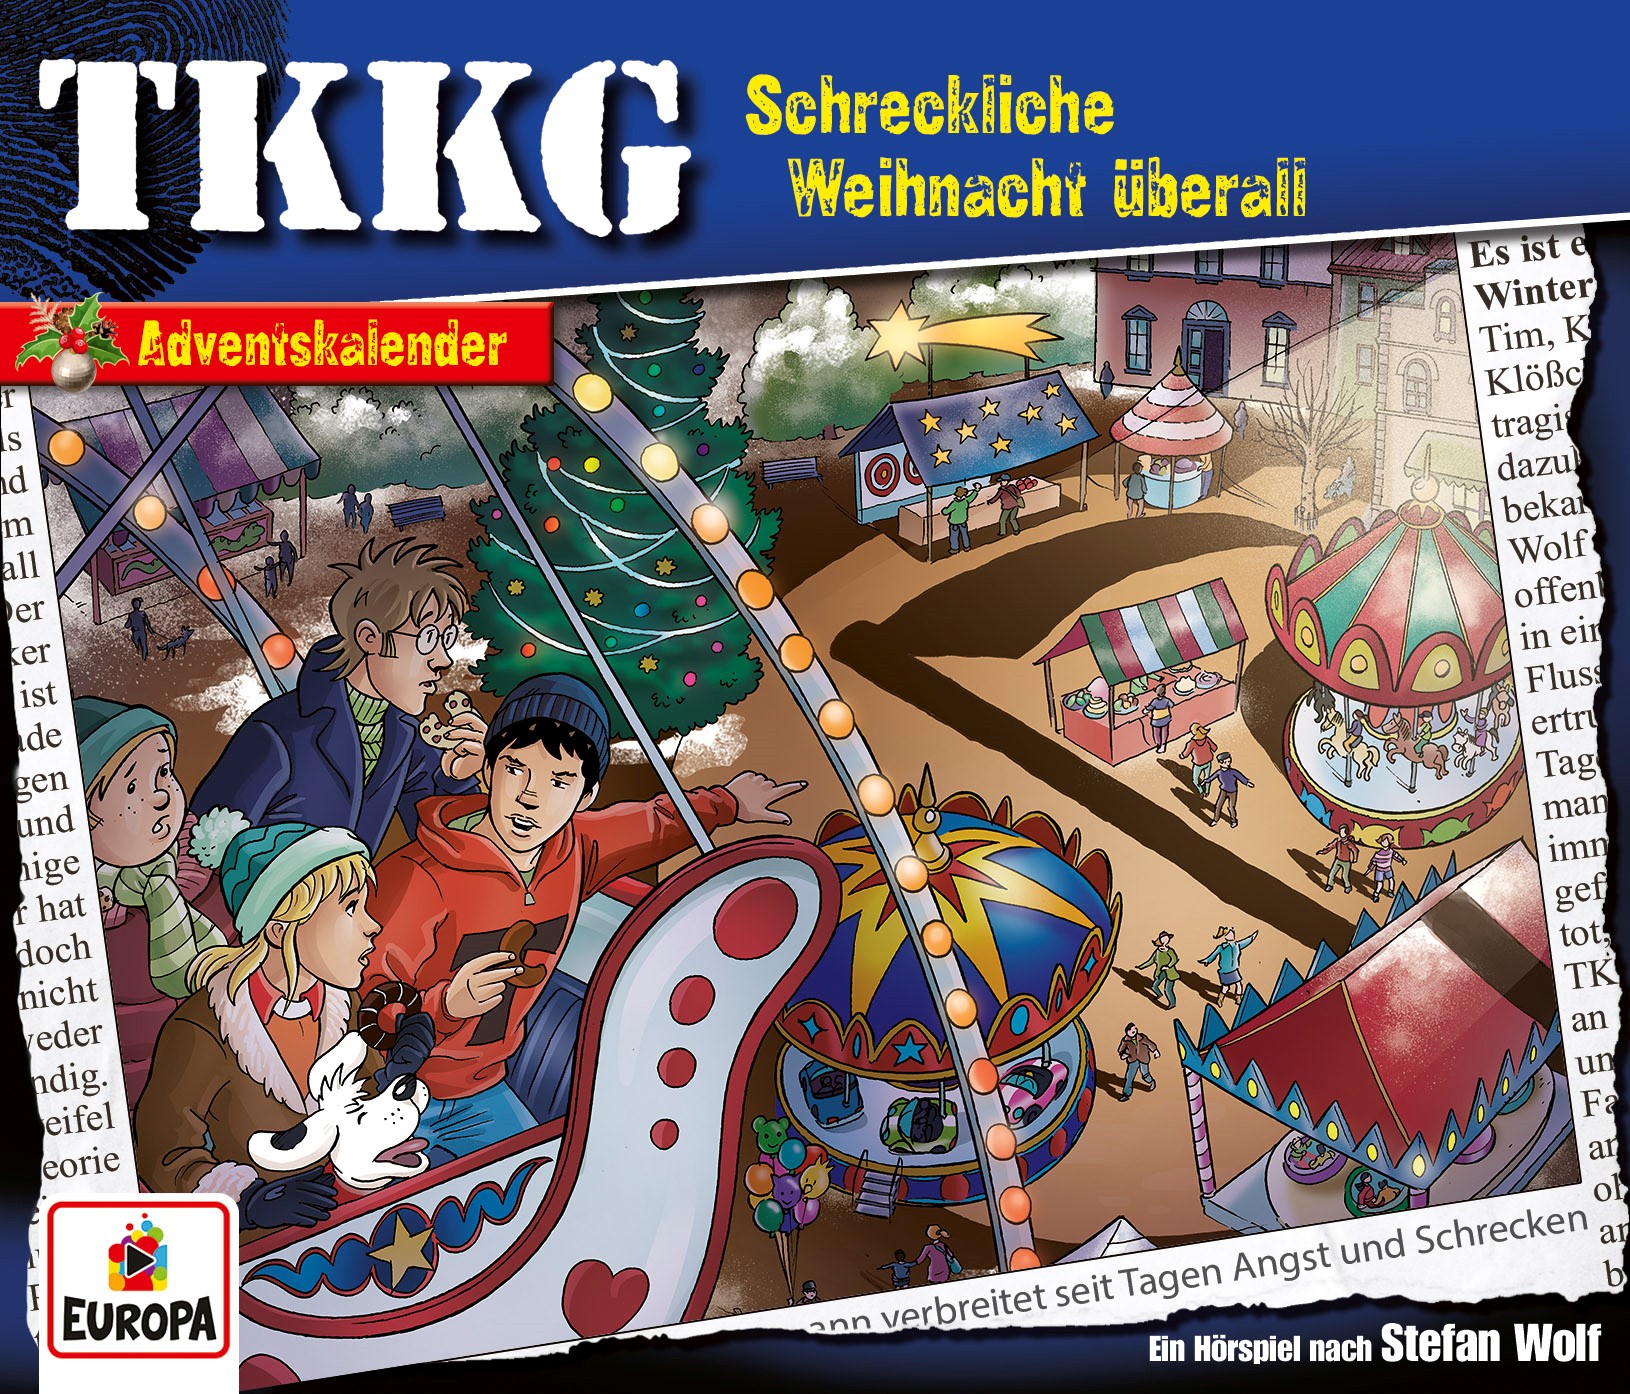 TKKG Hörspiel-Folge 221: Schreckliche Weihnacht überall (Adventskalender)